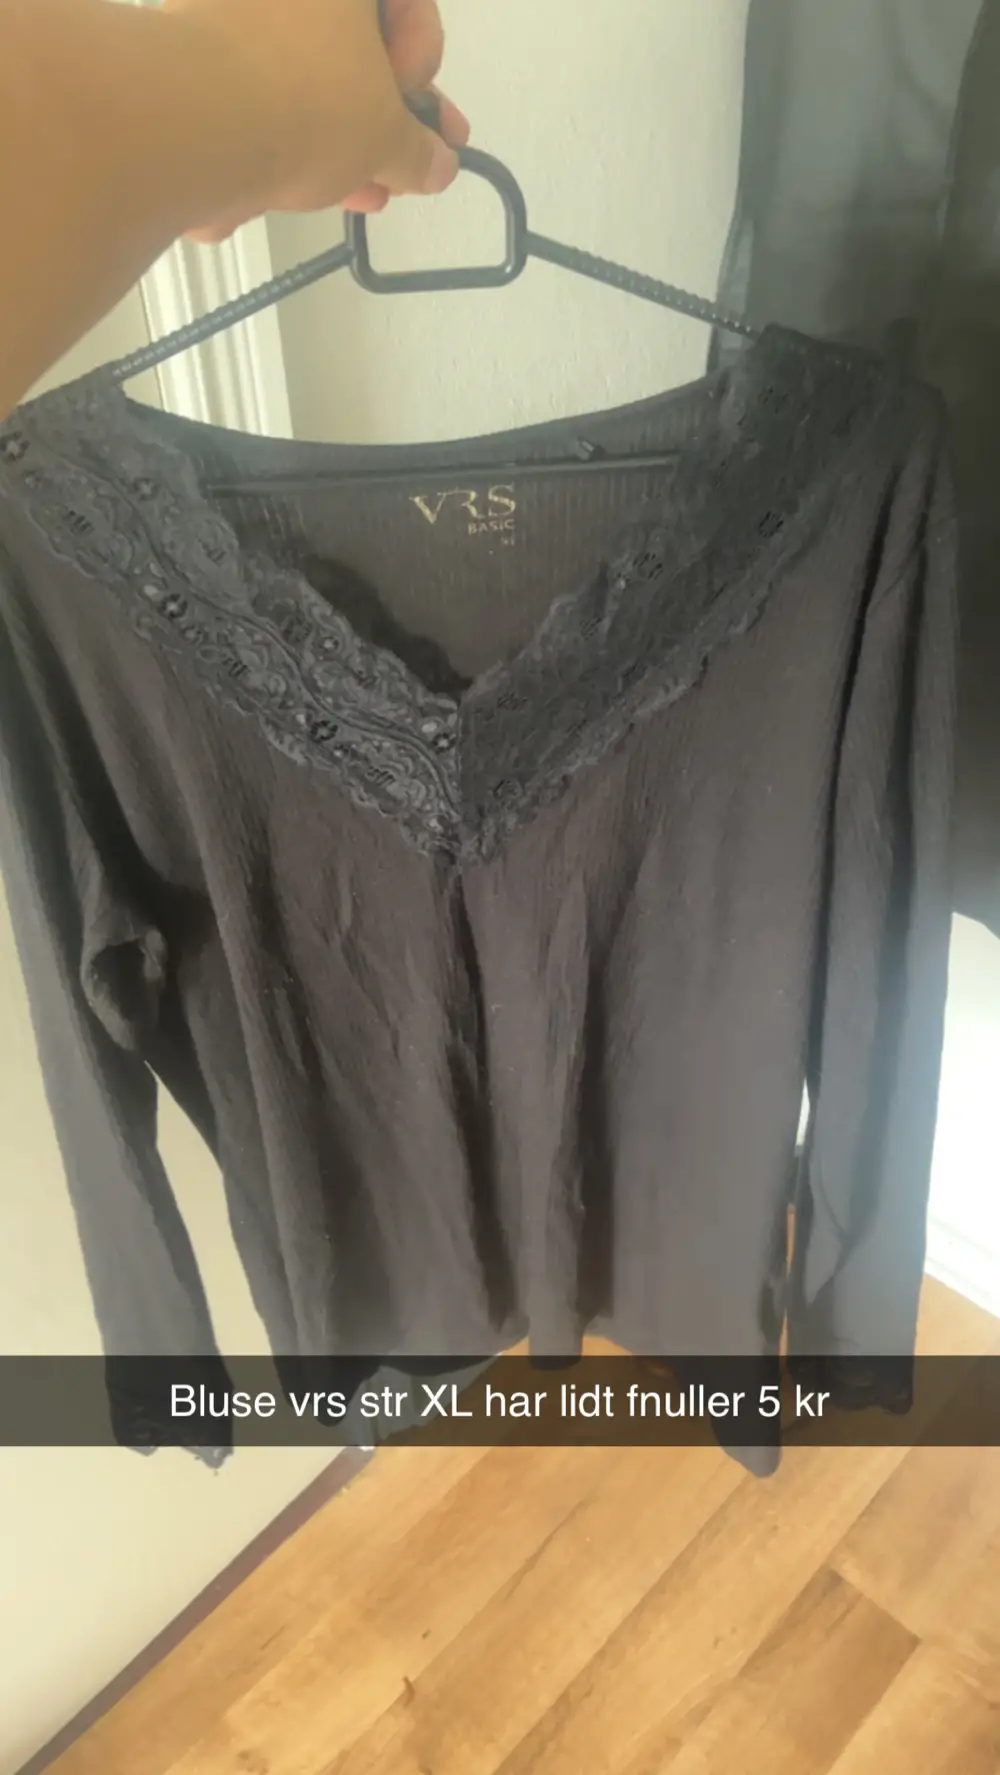 Køb VRS Bluse i størrelse XL af Theresa på Reshopper · Shop secondhand og bolig